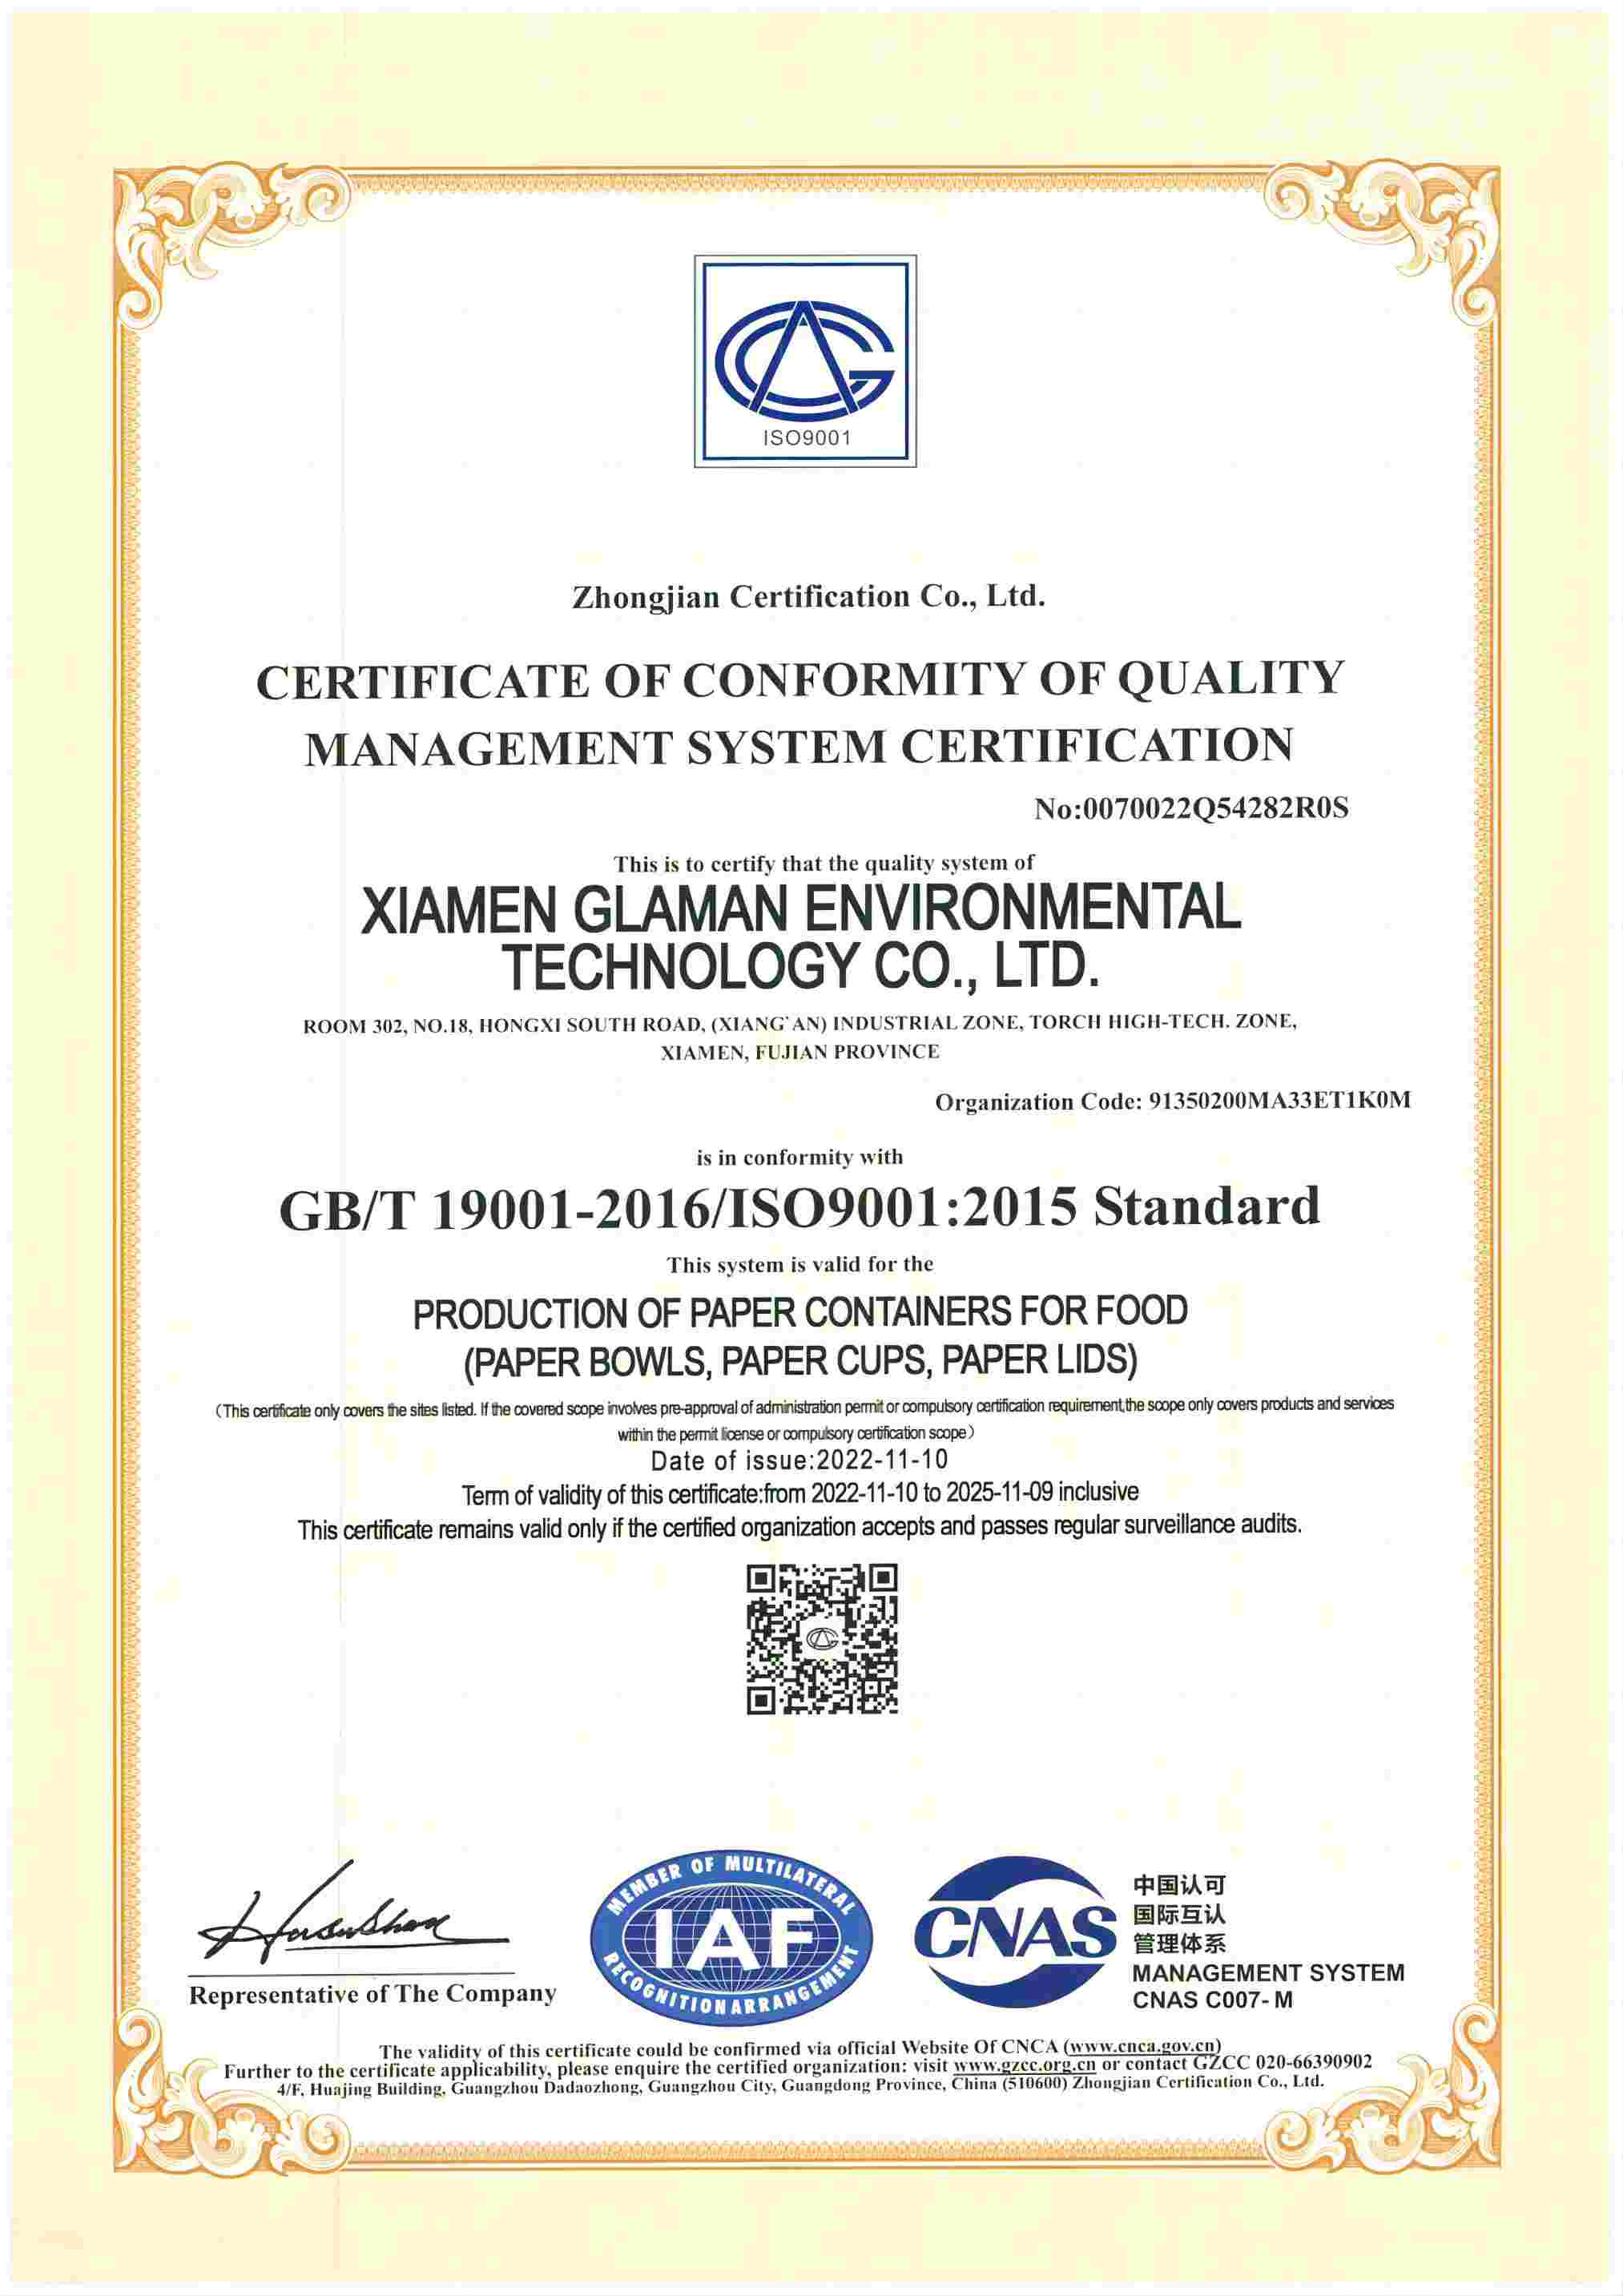 Die Zertifizierung nach ISO9001
        